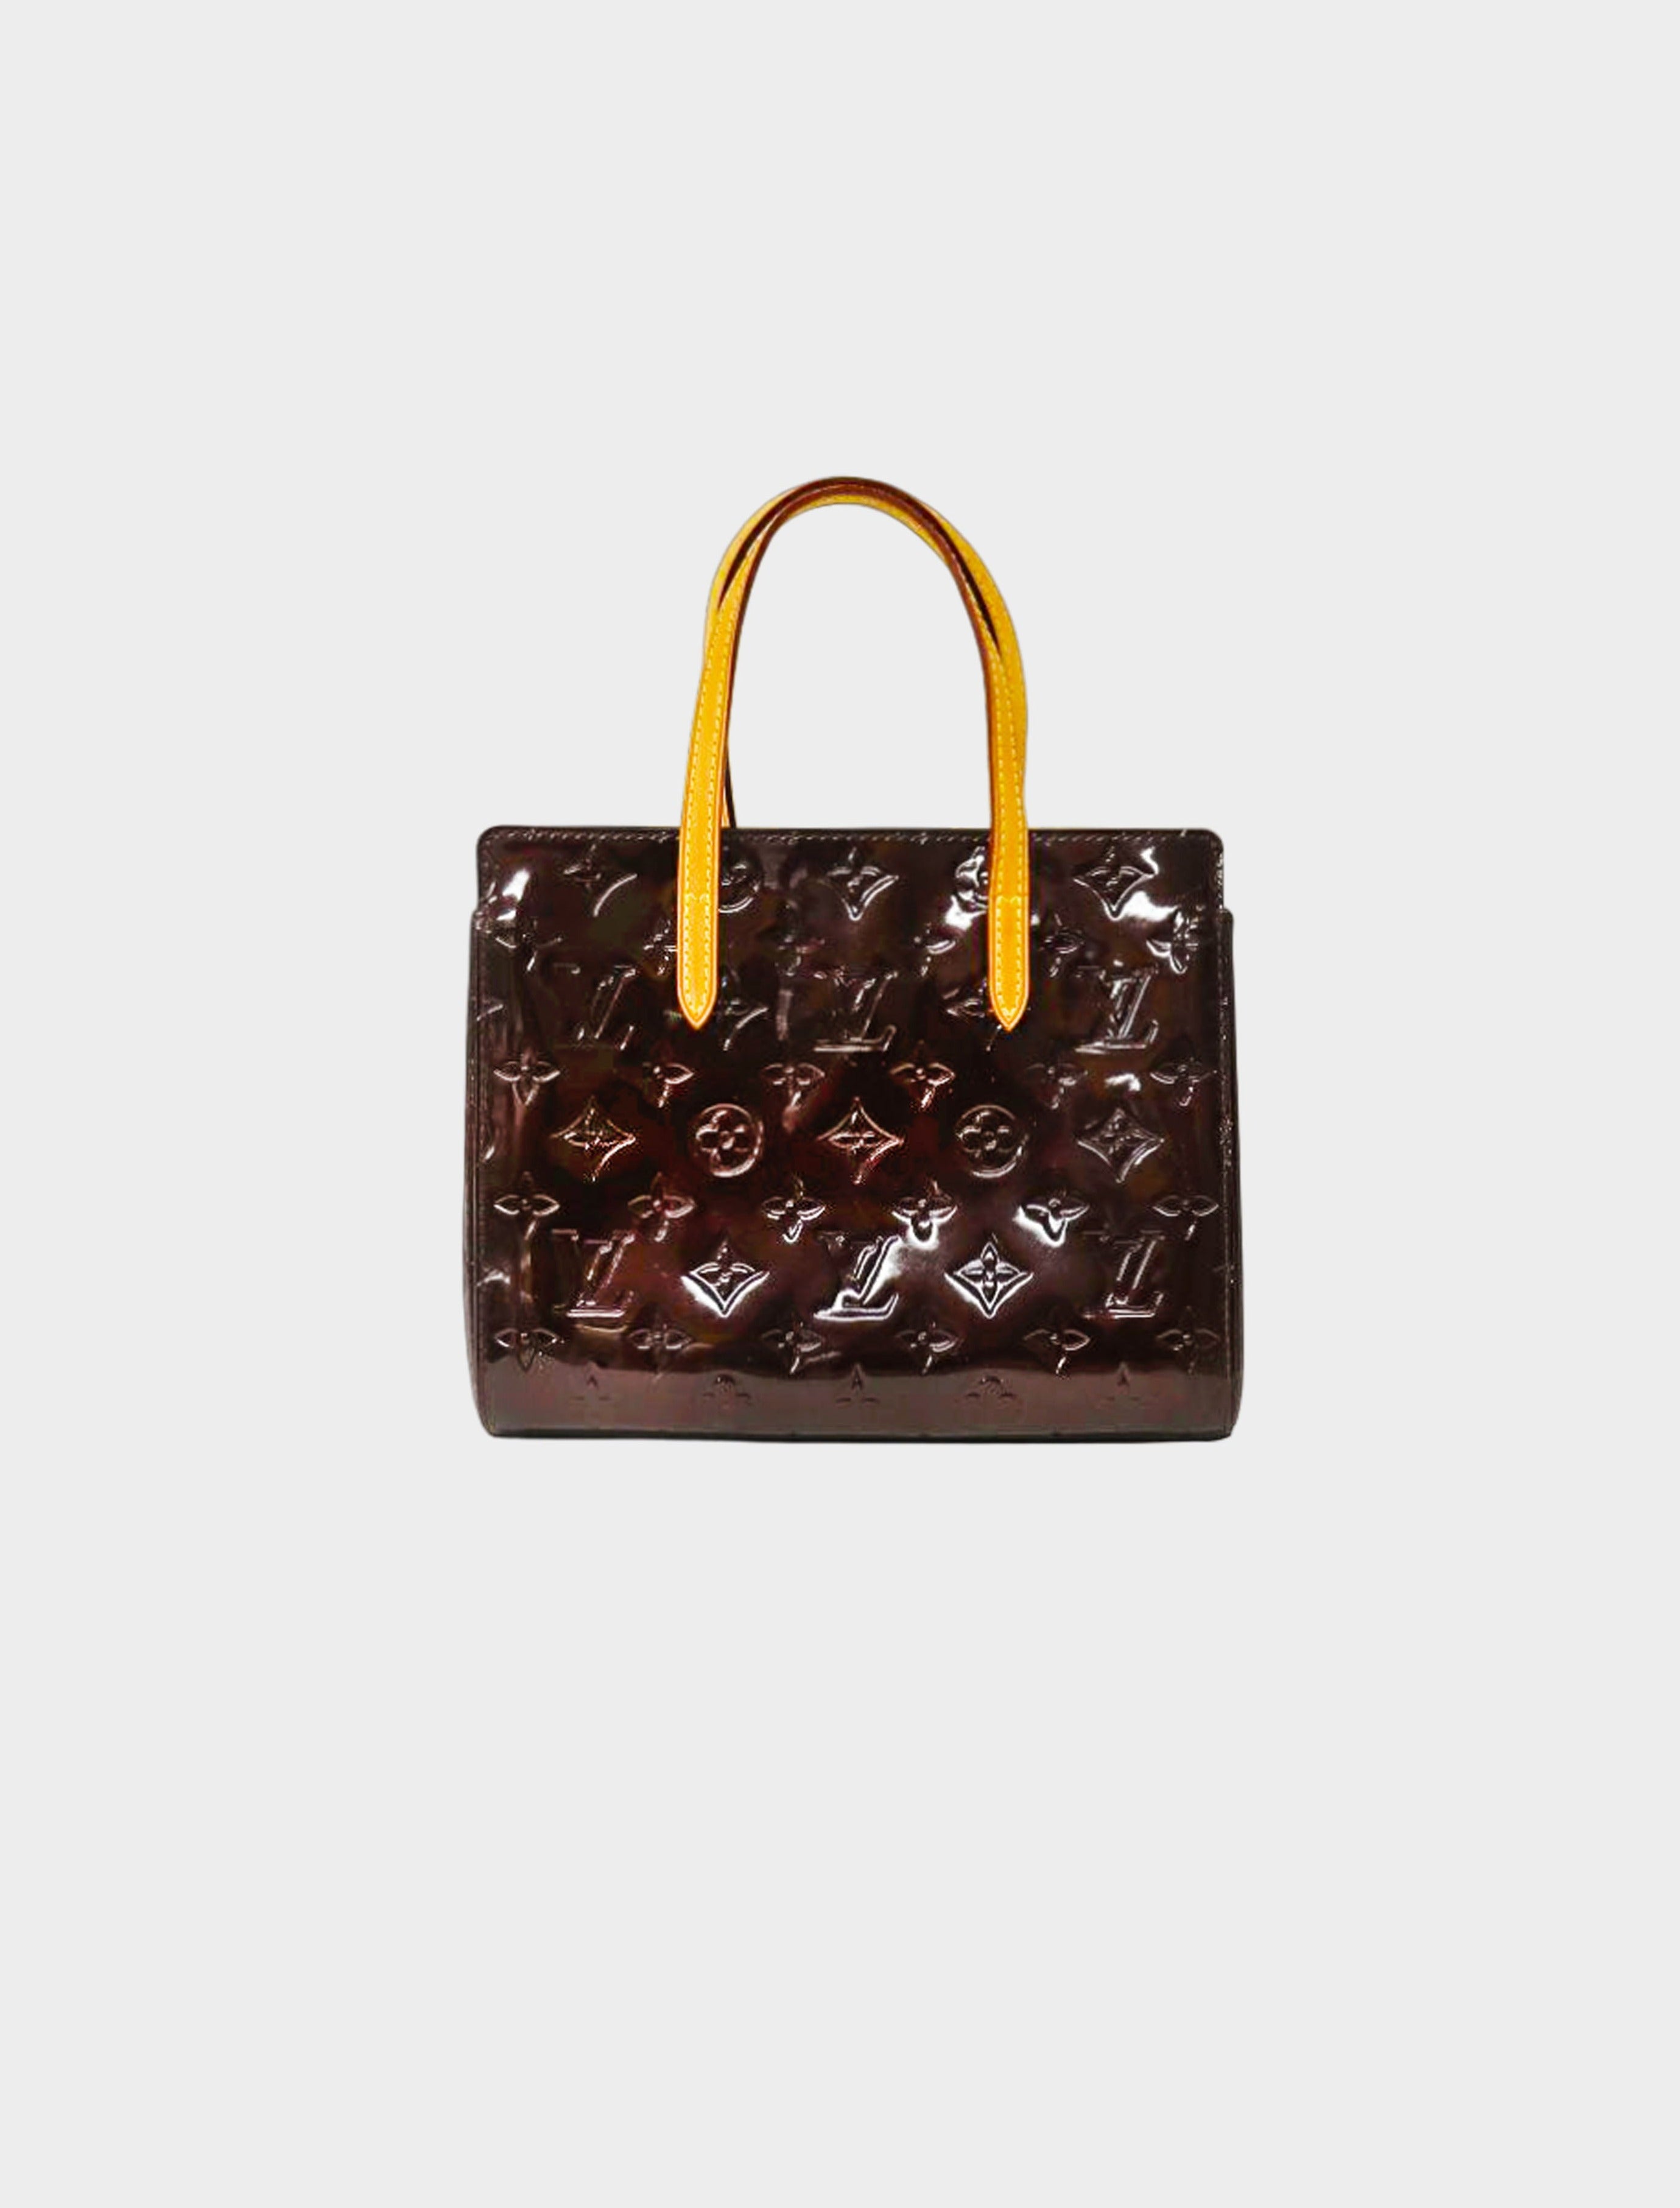 Louis Vuitton 2013 Handbag Collection